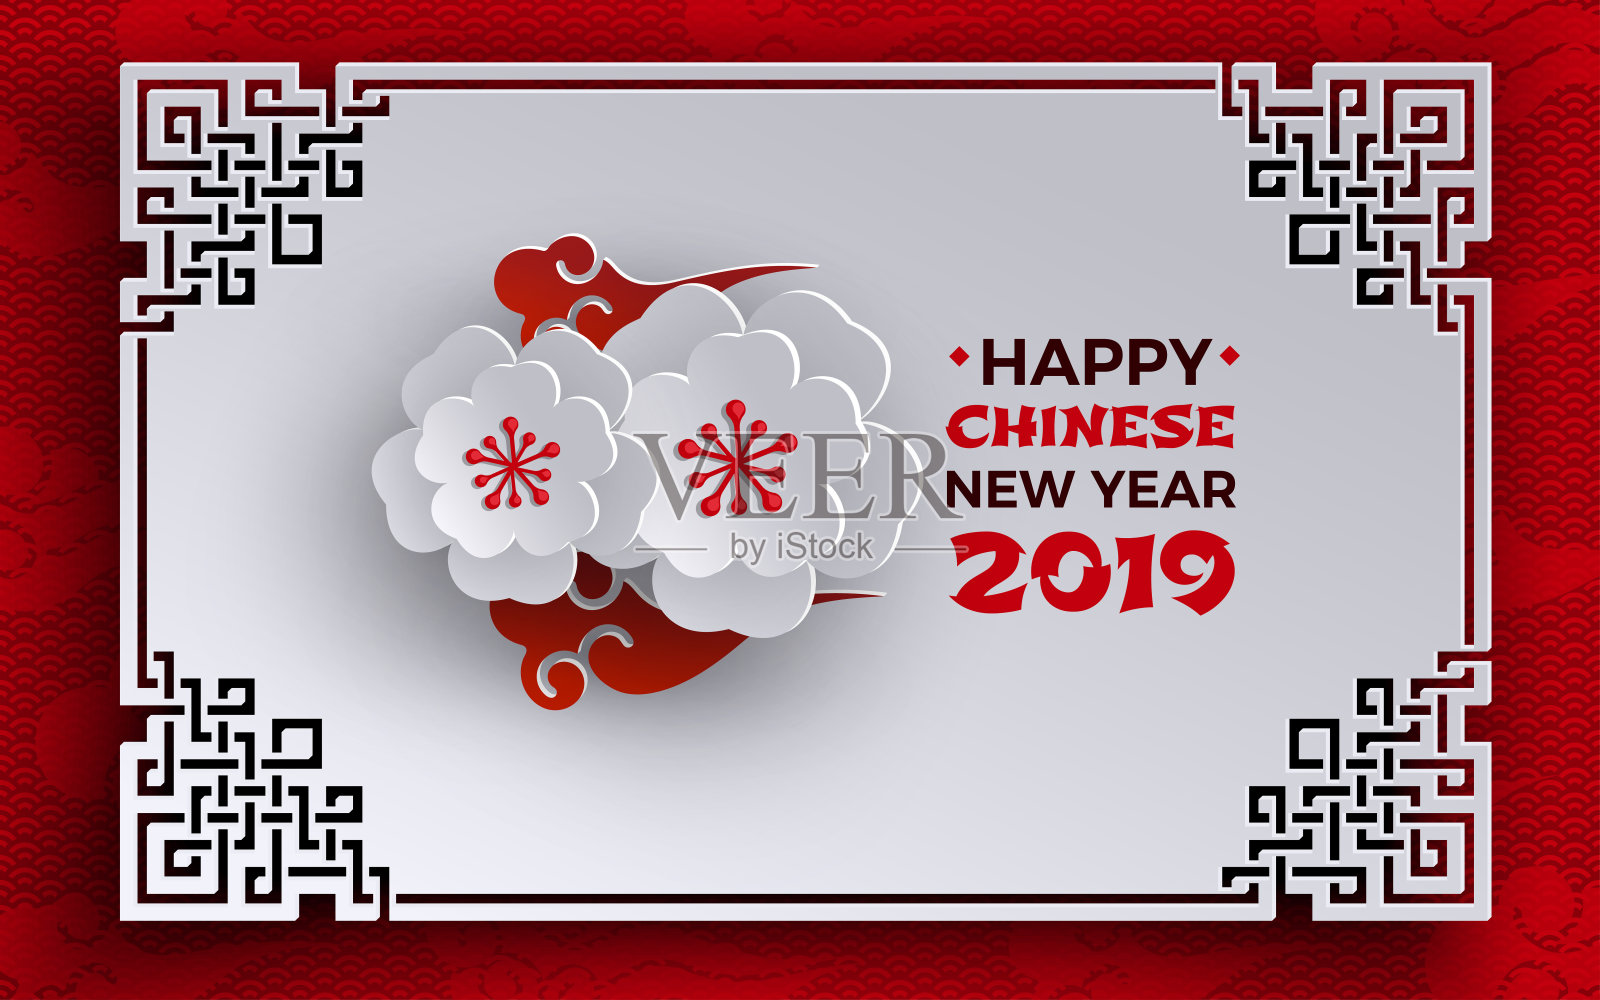 中国新年2019横幅。东方画框，樱花樱花，红色图案背景，中国云彩。贺卡、横幅、海报的设计元素。纸剪出风格，矢量设计模板素材